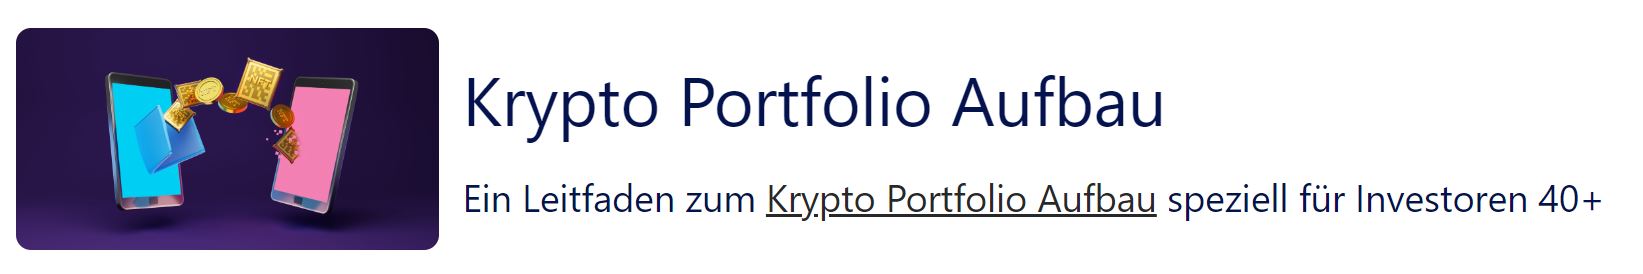 krypto portfolio aufbau